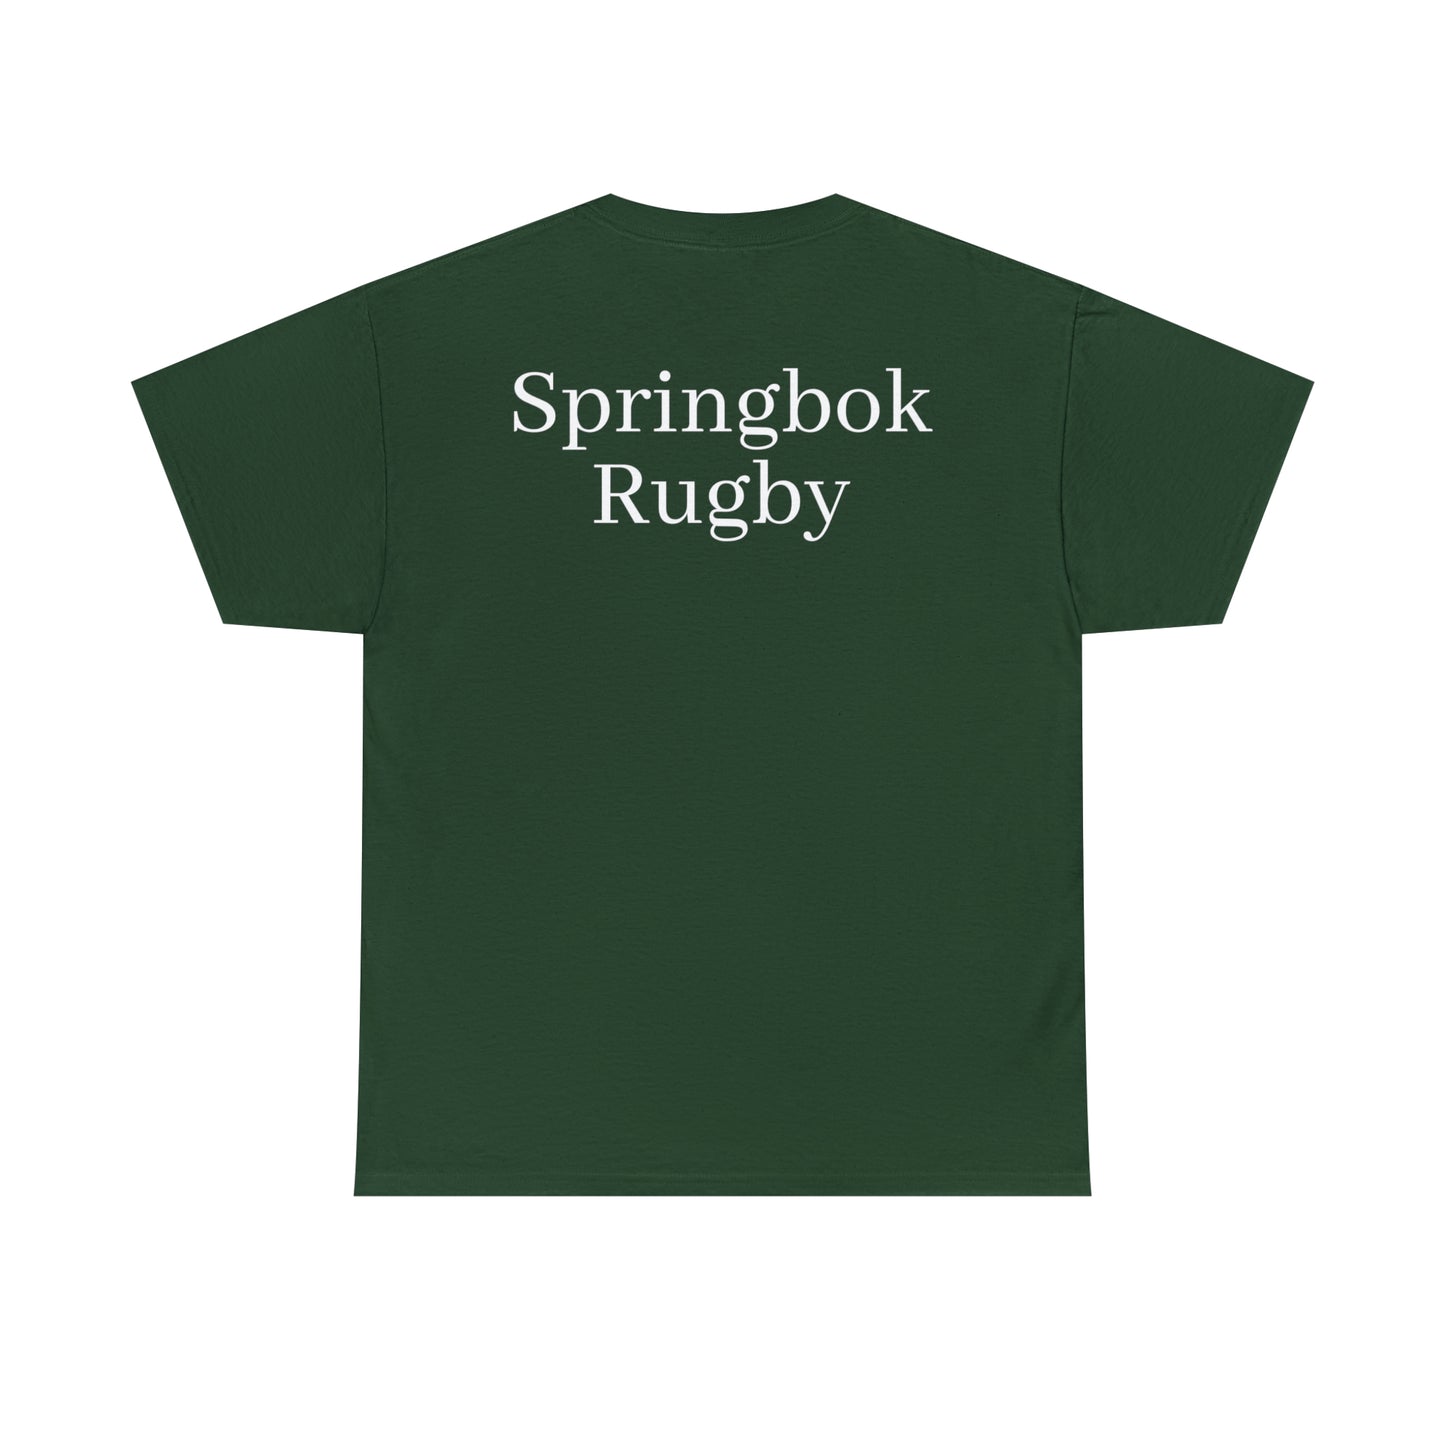 Springboks lifting RWC - dark shirts